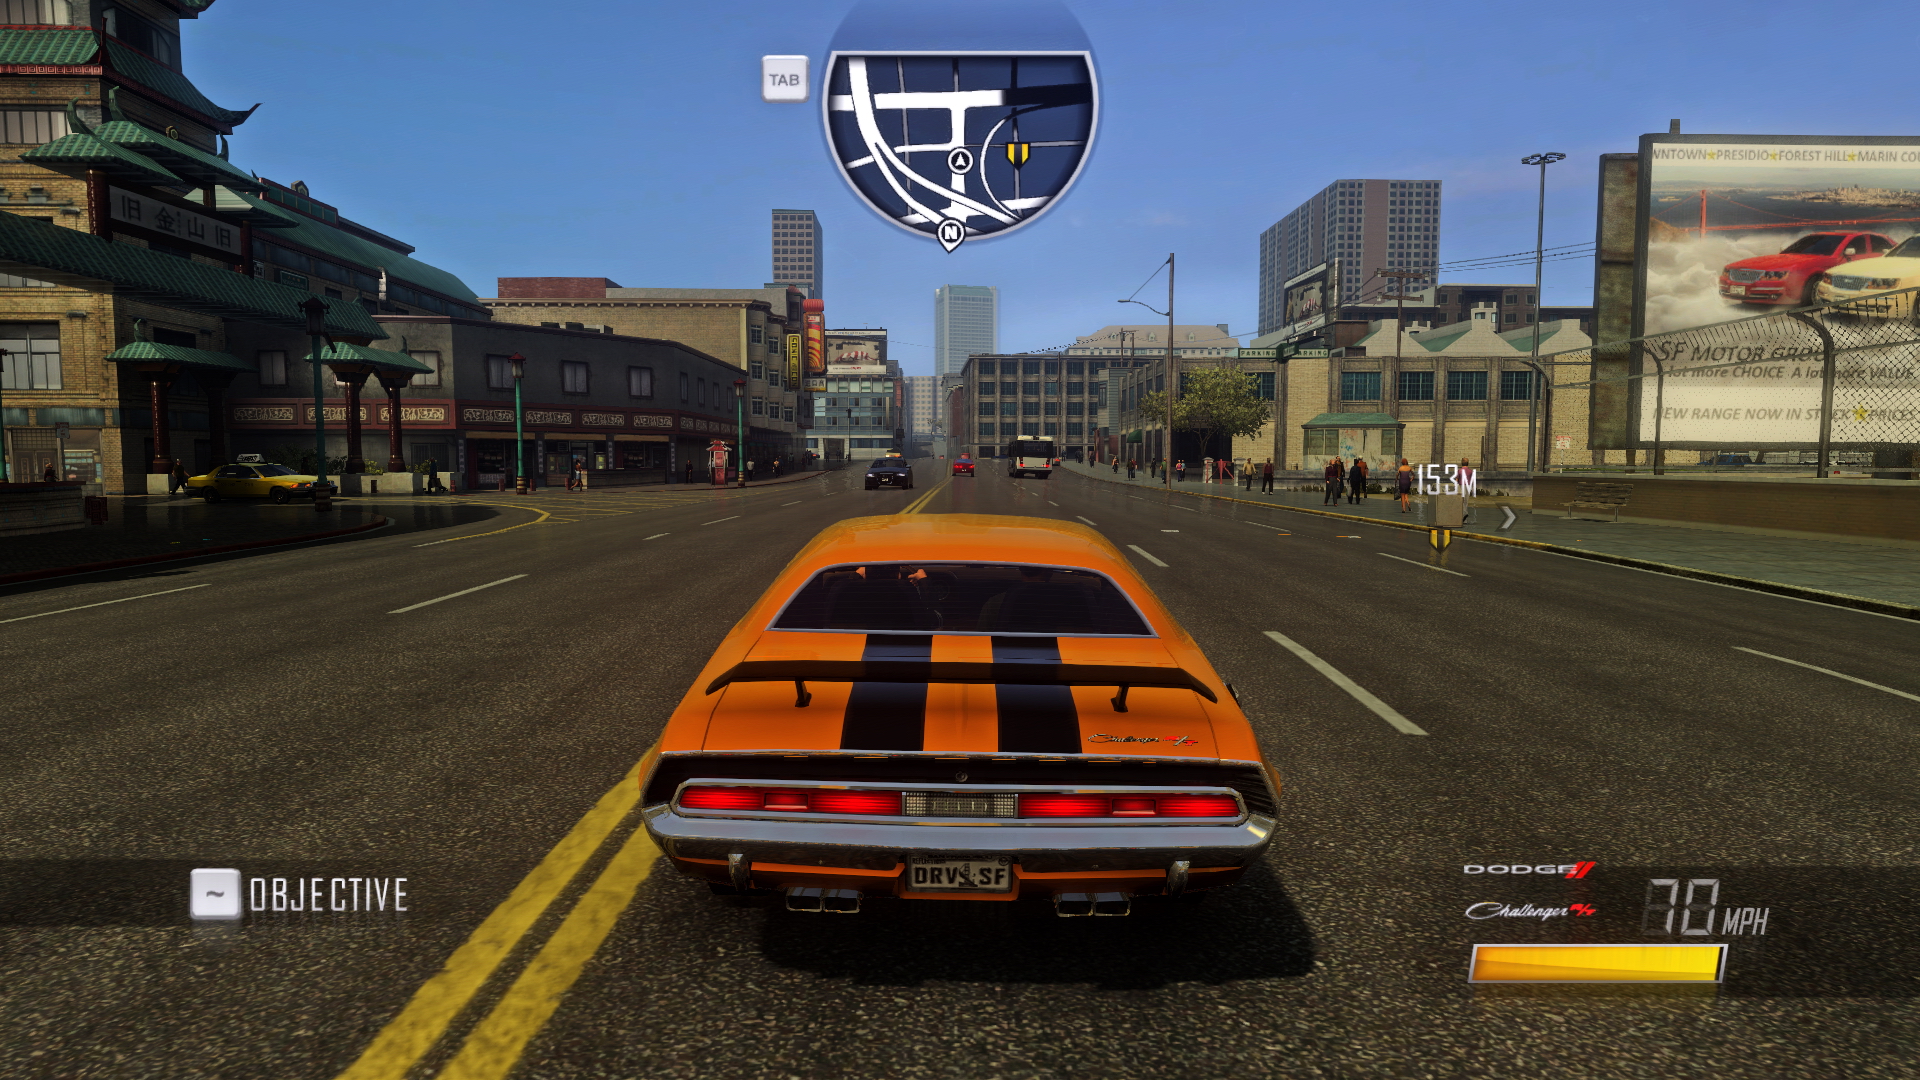 Driver San Francisco Online Multiplayer Crack 38